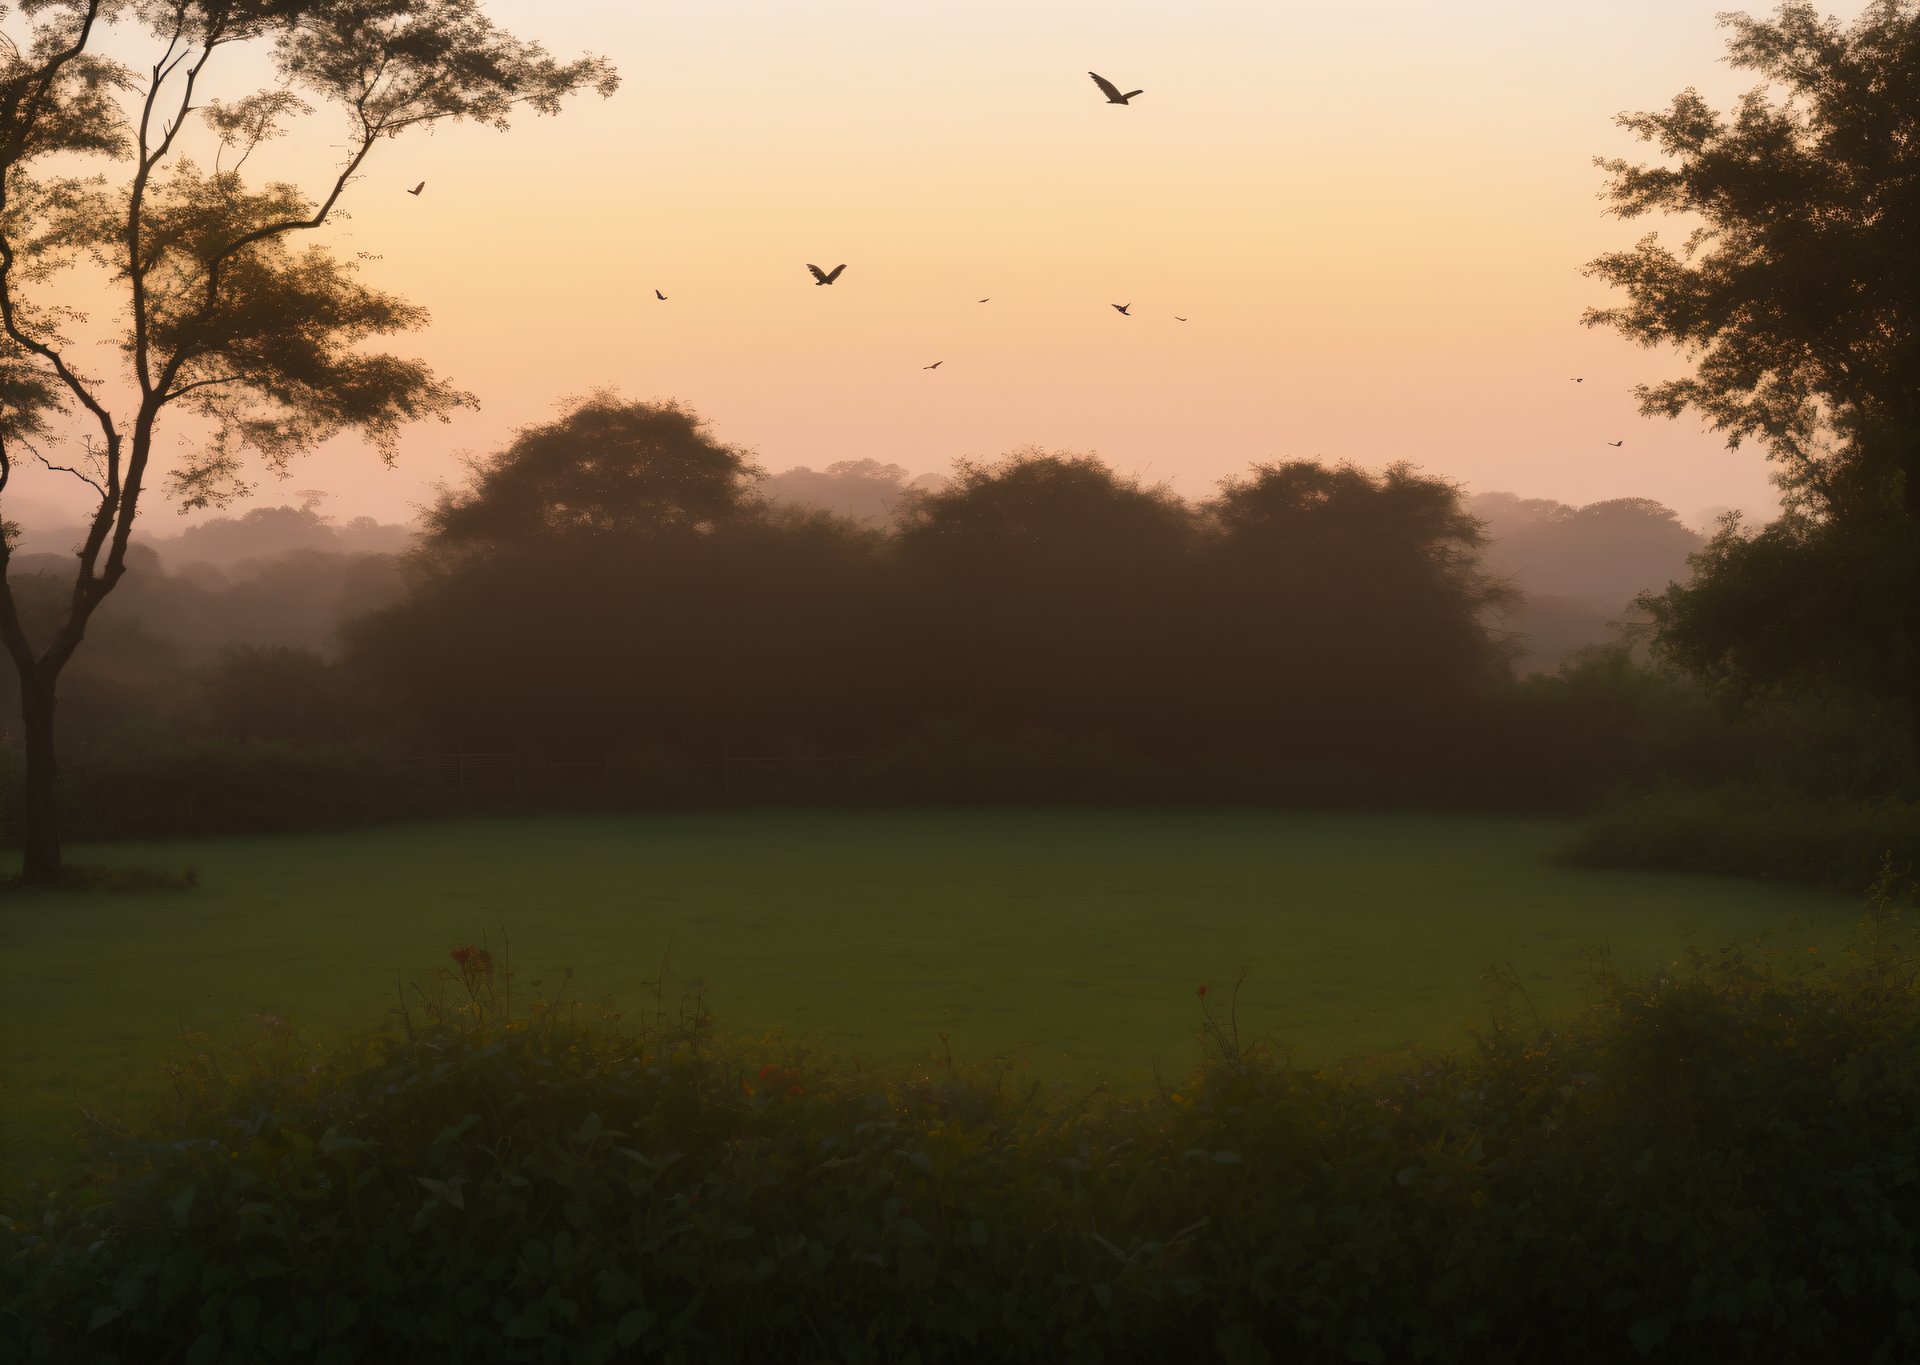 Dawn accompanied by serene birdsong